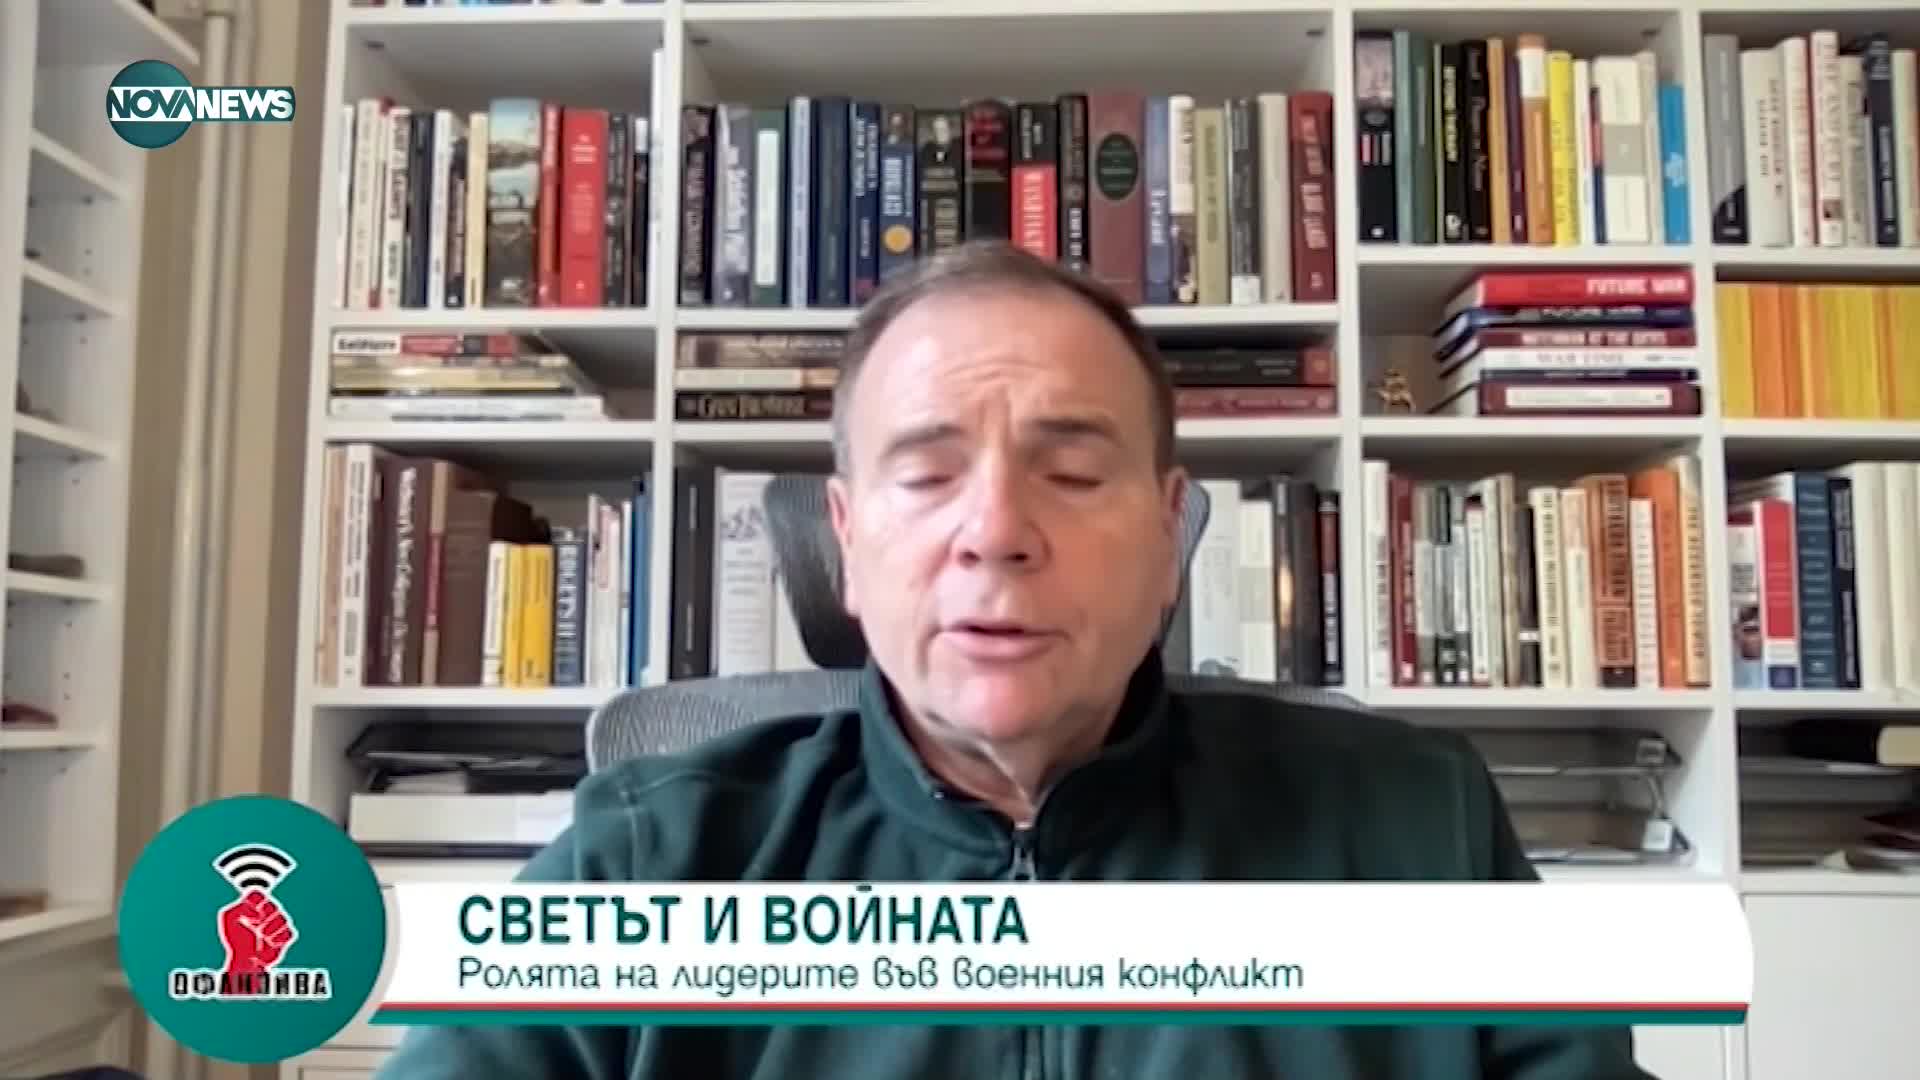 Ген. Бен Ходжис: Горд съм, че България отказа да играе по правилата на Русия